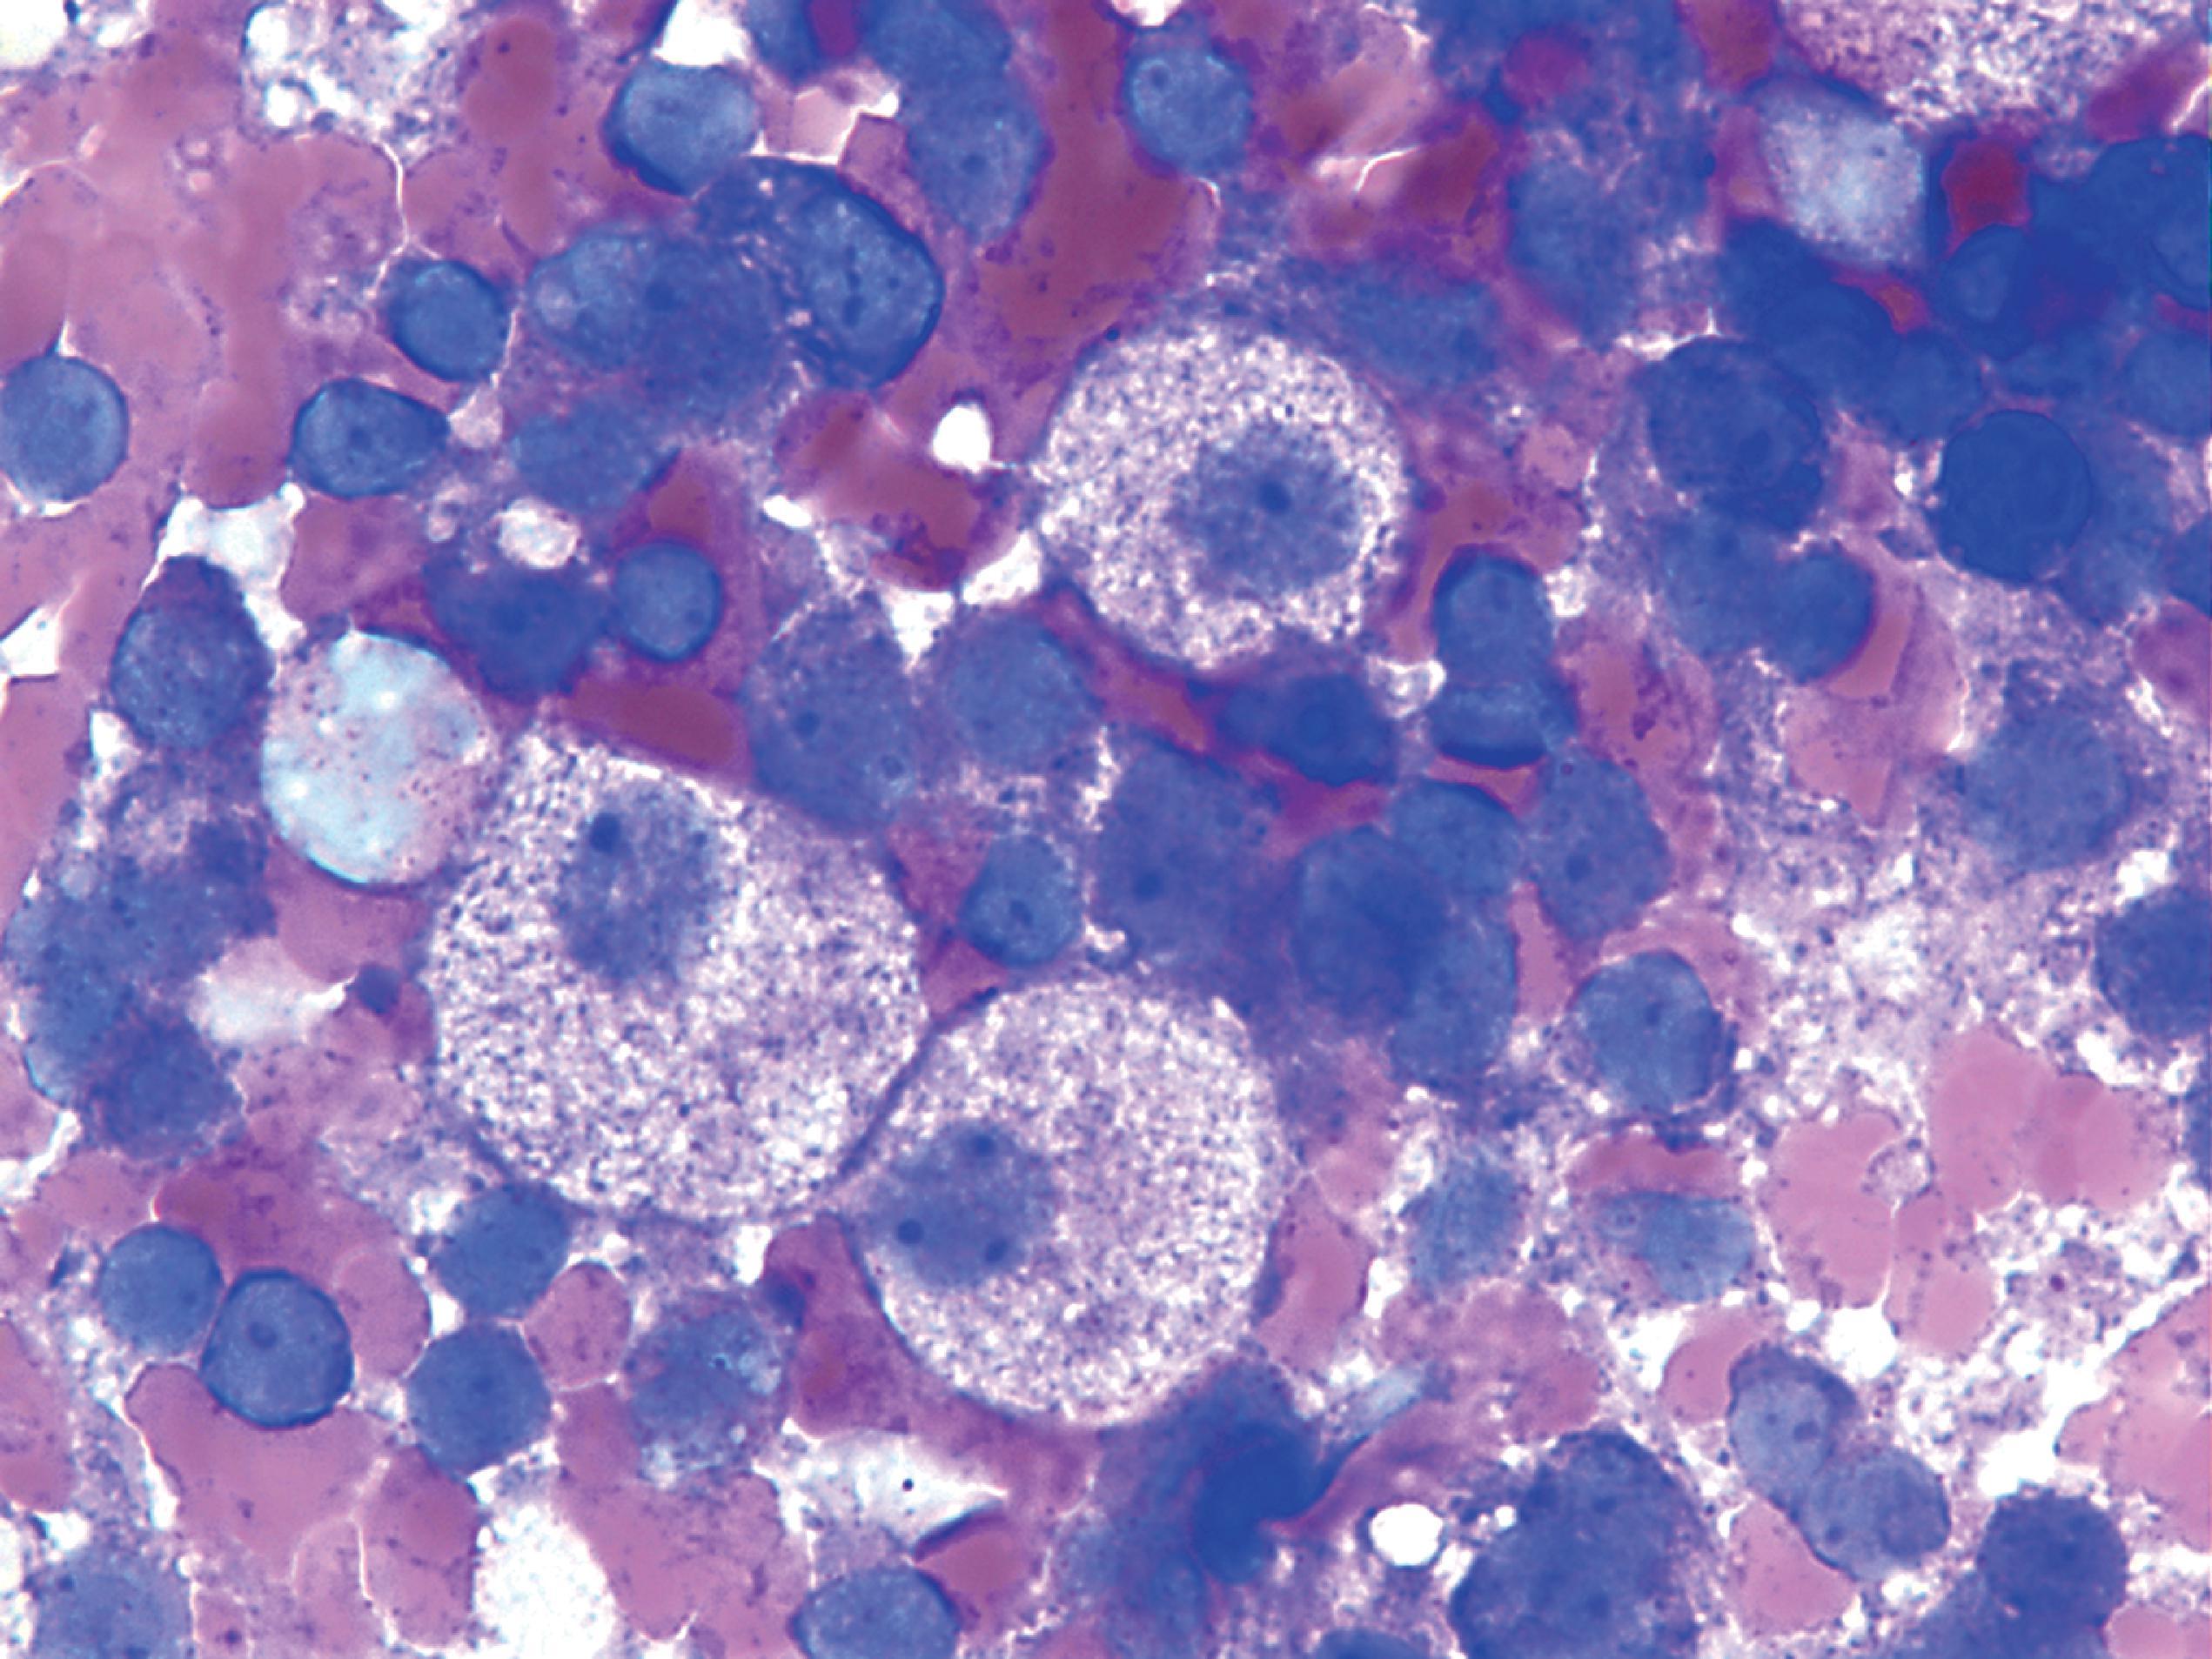 FIGure 8.16, Niemann-Pick cells in the bone marrow.